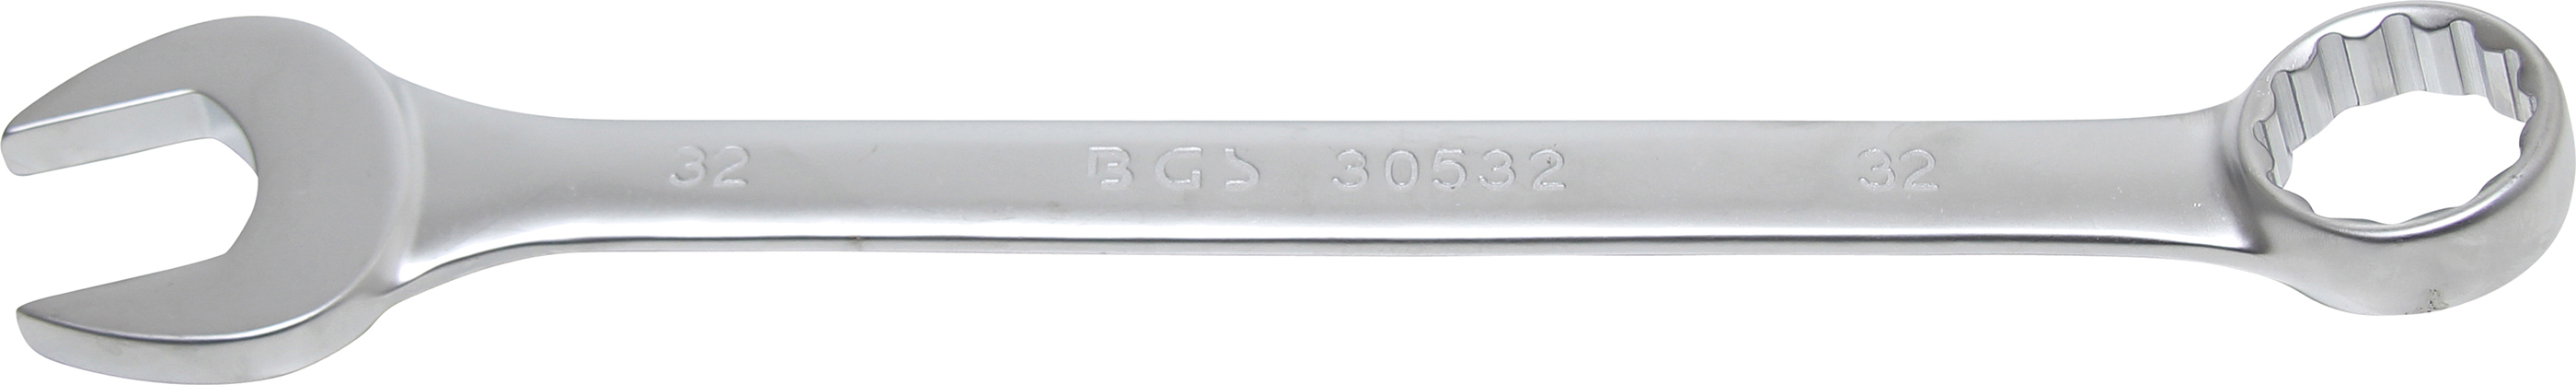 BGS 30532 Cheie combinata, 32 mm